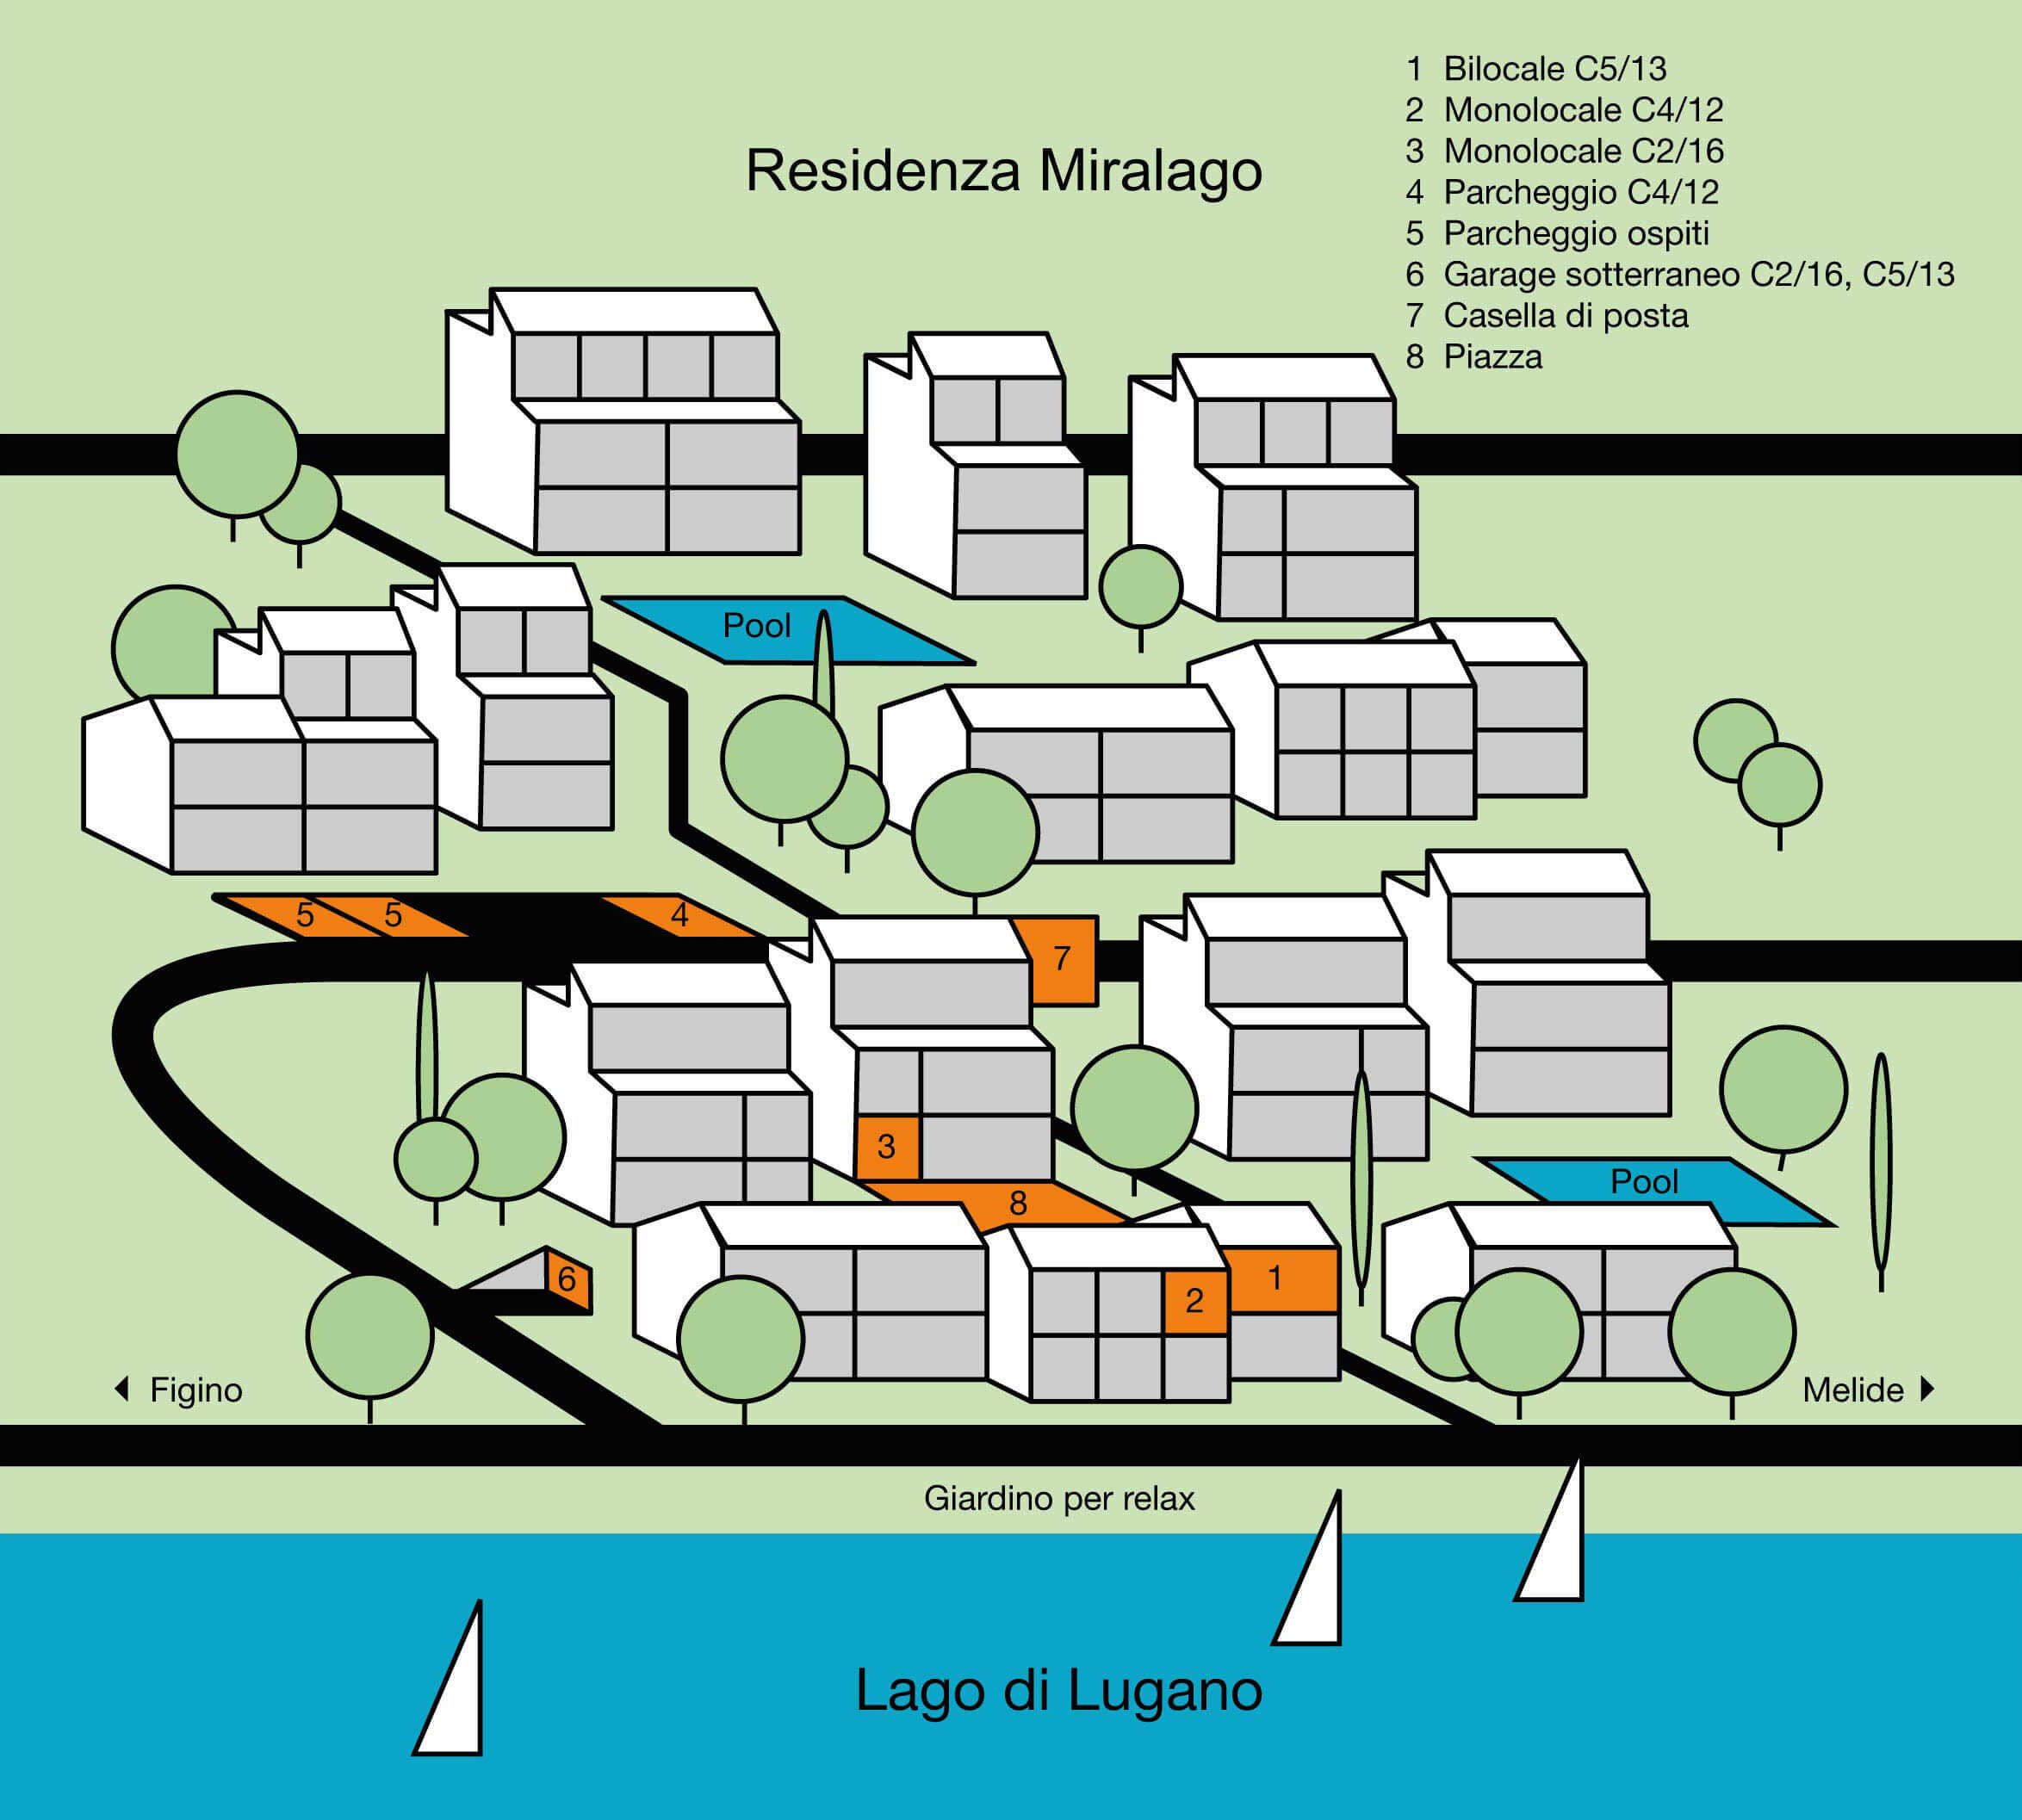 Dieser Plan zeigt eine Übersicht der Residenza Miralago